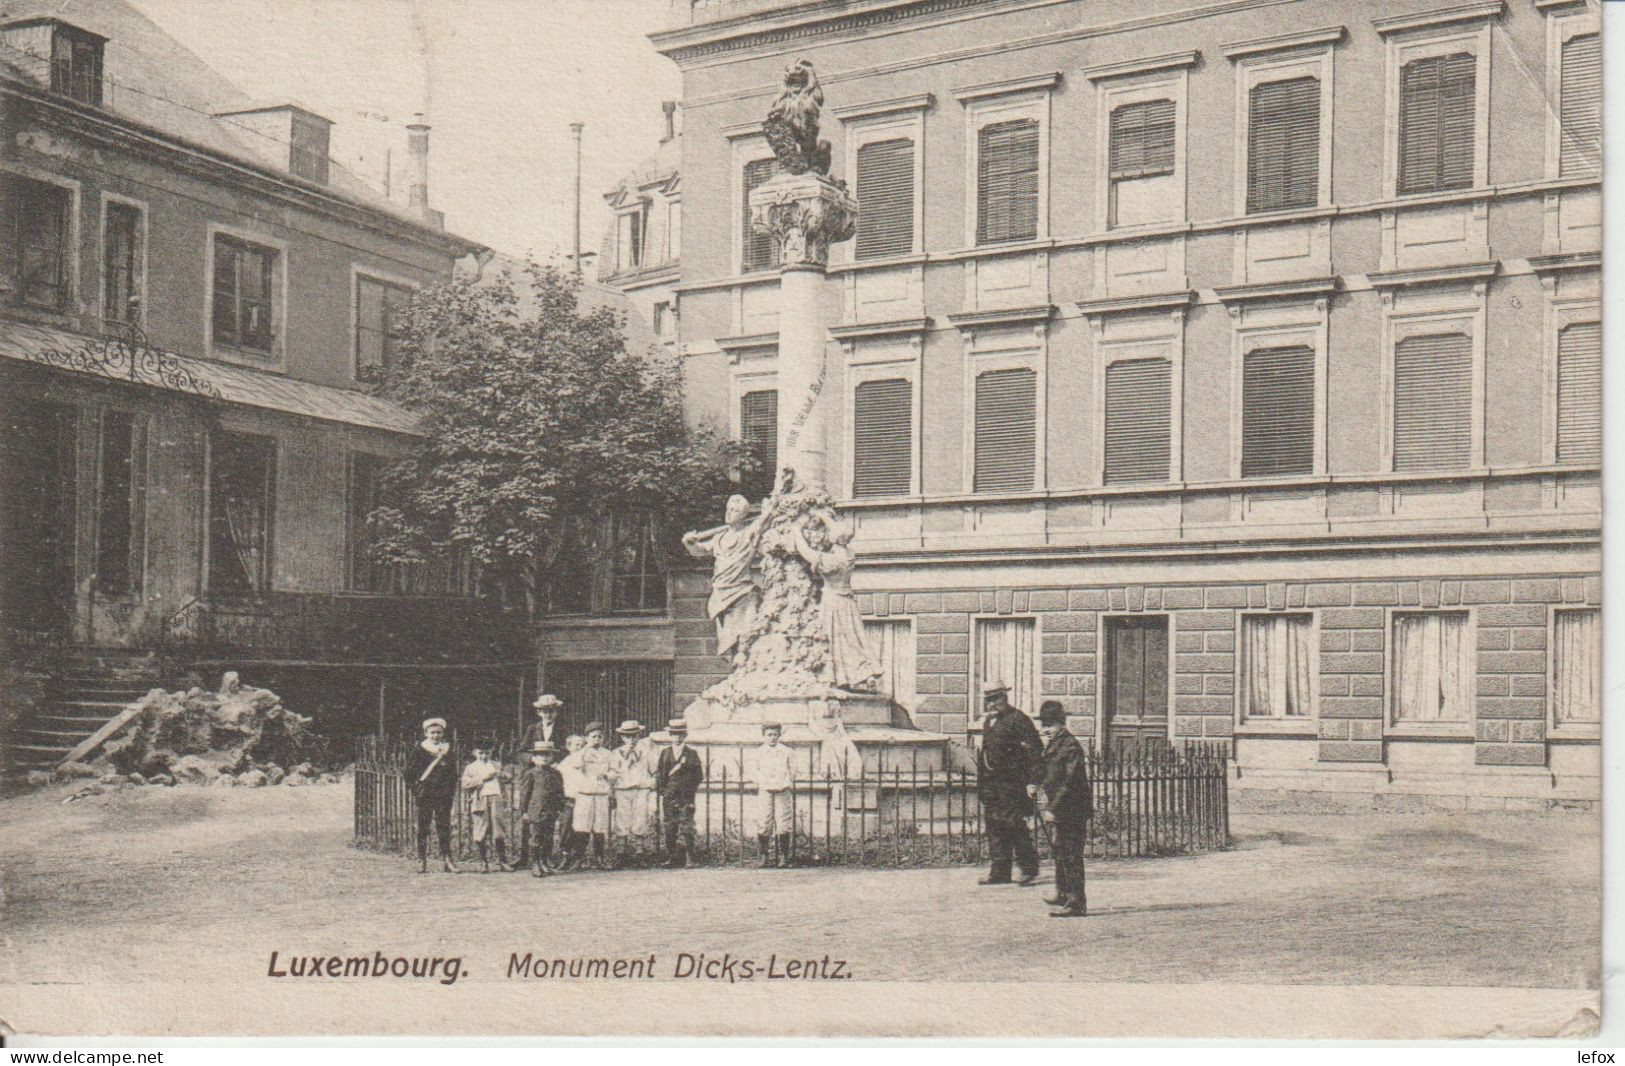 LUXEMBOURG MONUMENT DICKS LENTZ - Luxemburg - Stadt